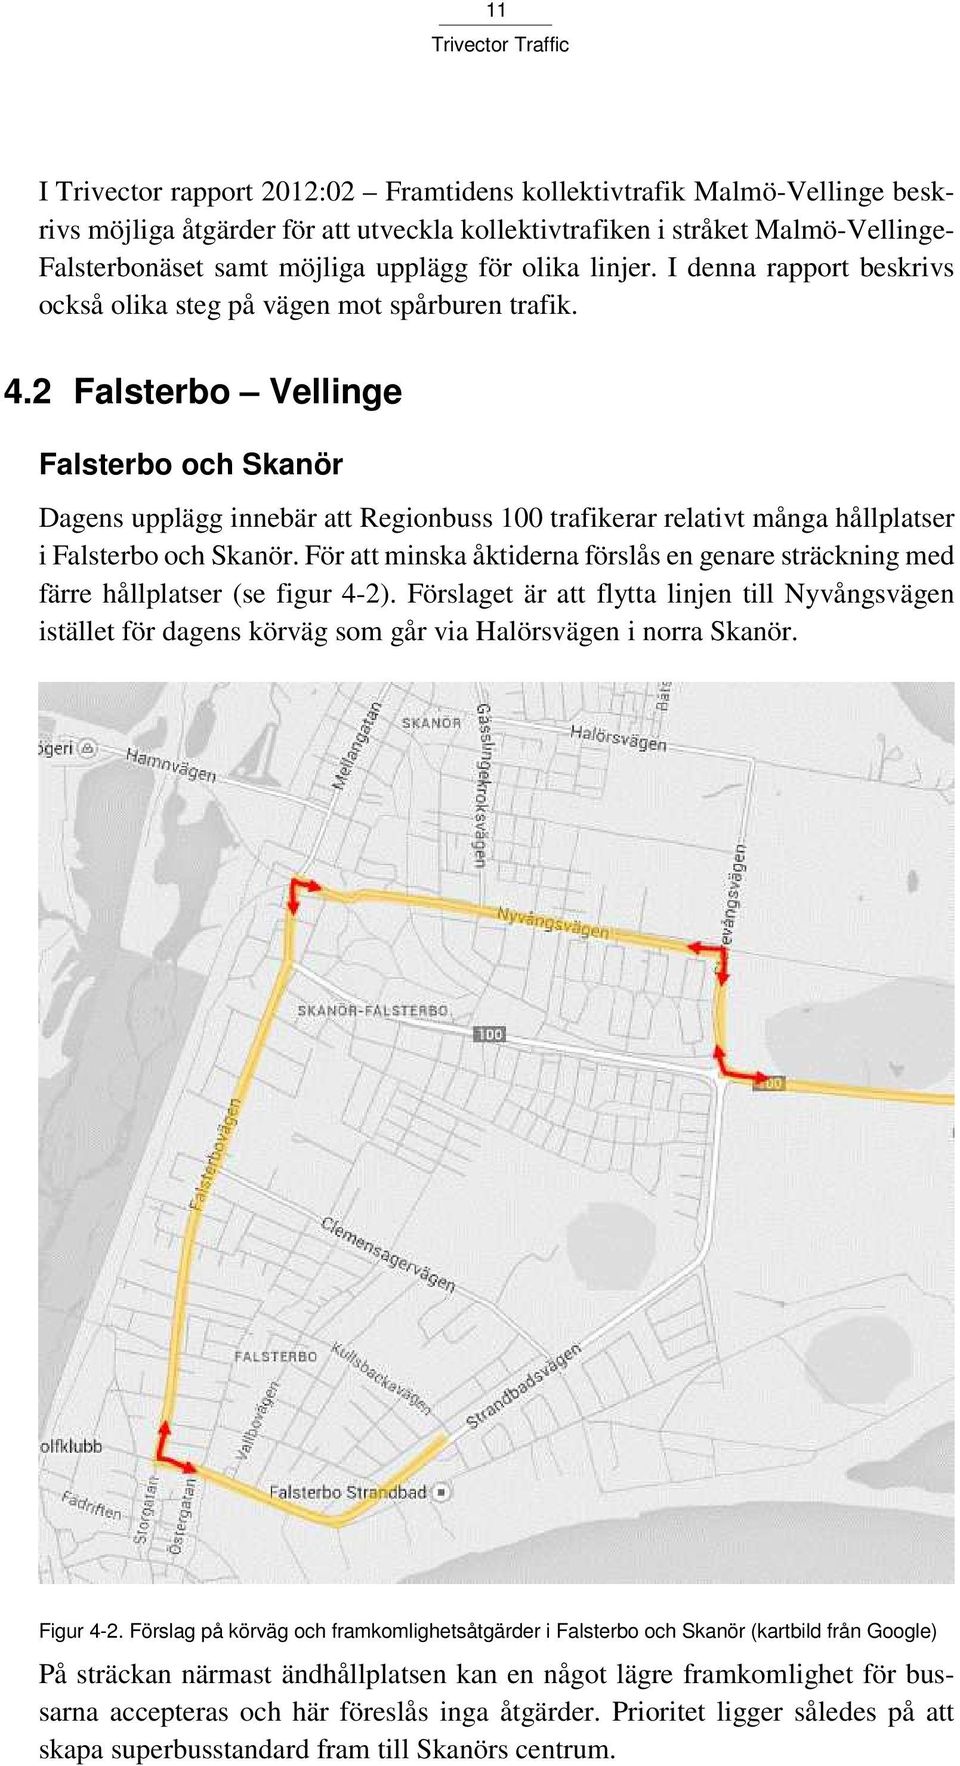 2 Falsterbo Vellinge Falsterbo och Skanör Dagens upplägg innebär att Regionbuss 100 trafikerar relativt många hållplatser i Falsterbo och Skanör.